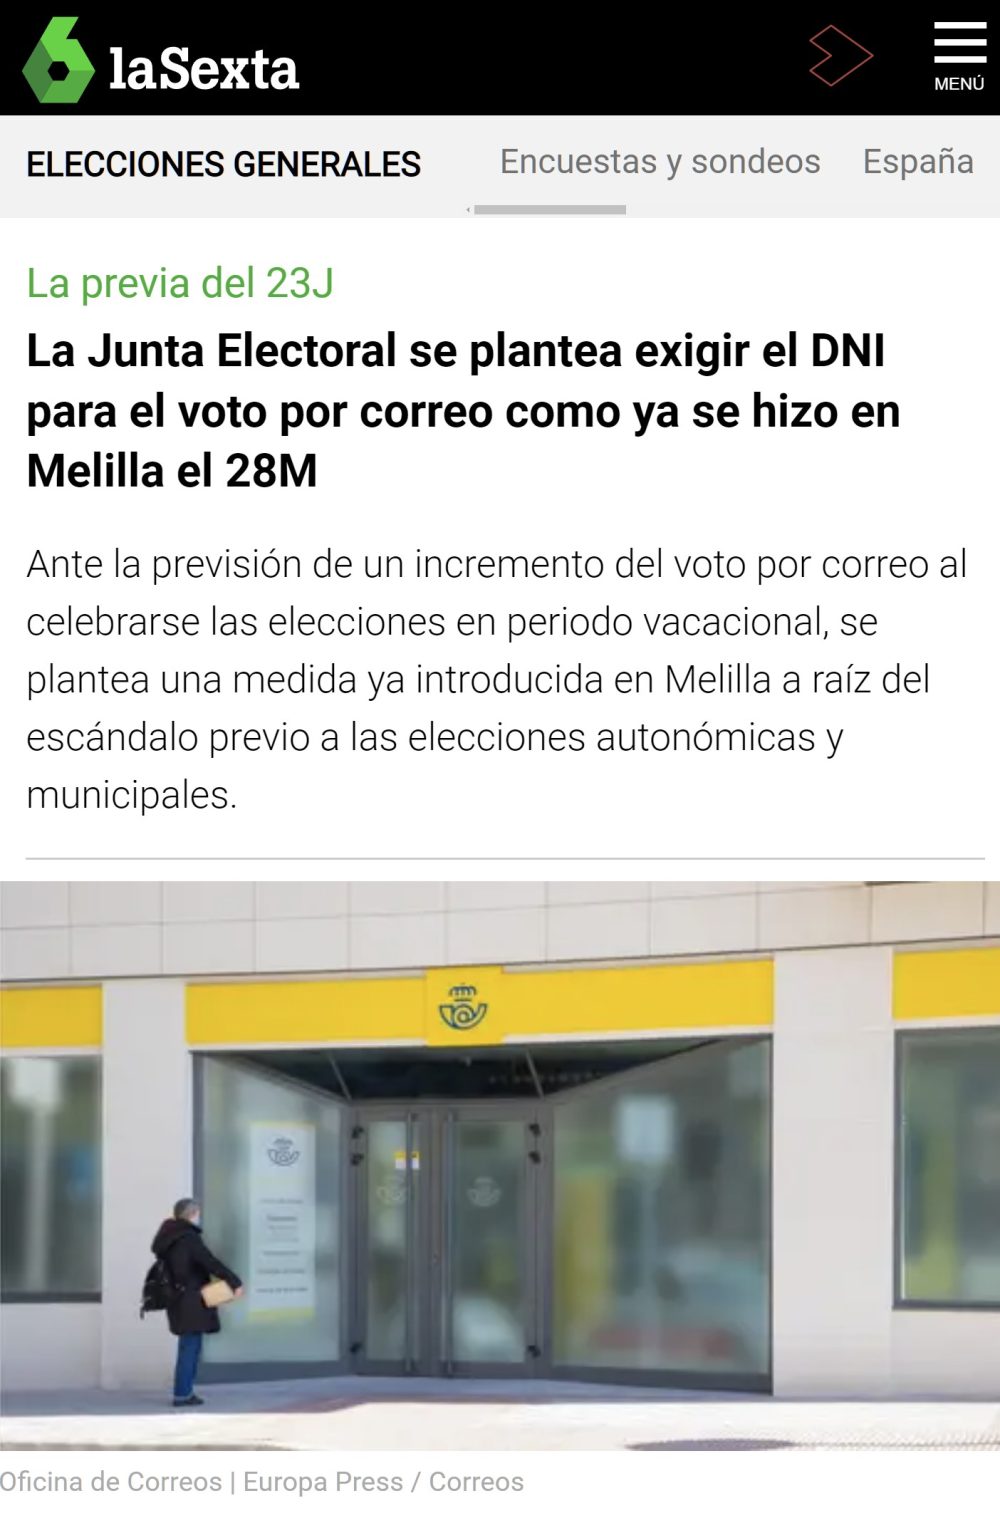 La junta electoral SE PLANTEA exigir el DNI para el voto por correo, como ya se hizo en Melilla después del aluvión de votos comprados